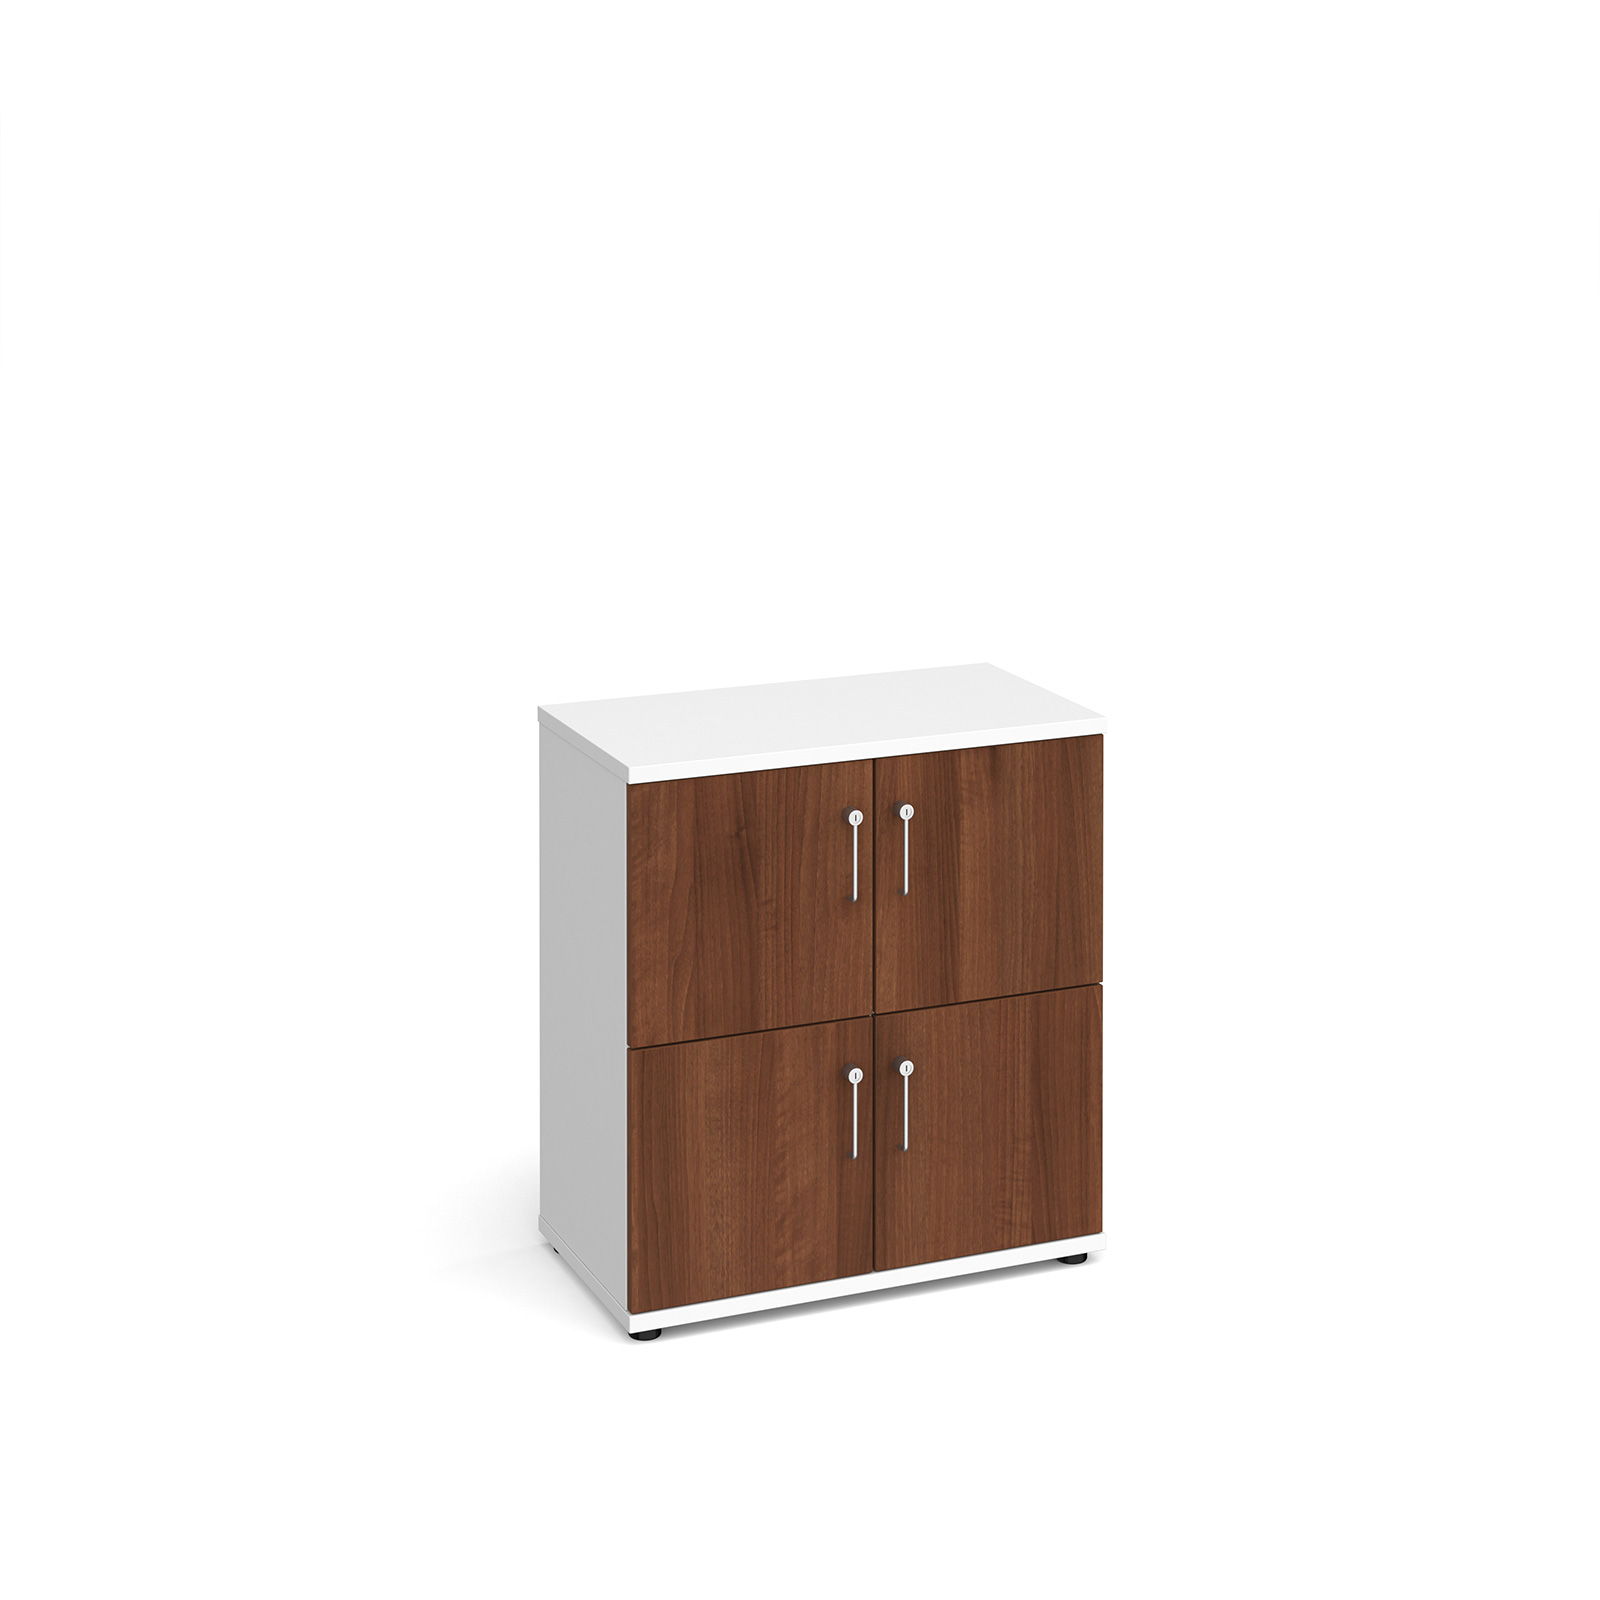 Wooden storage lockers 4 door - white with walnut doors